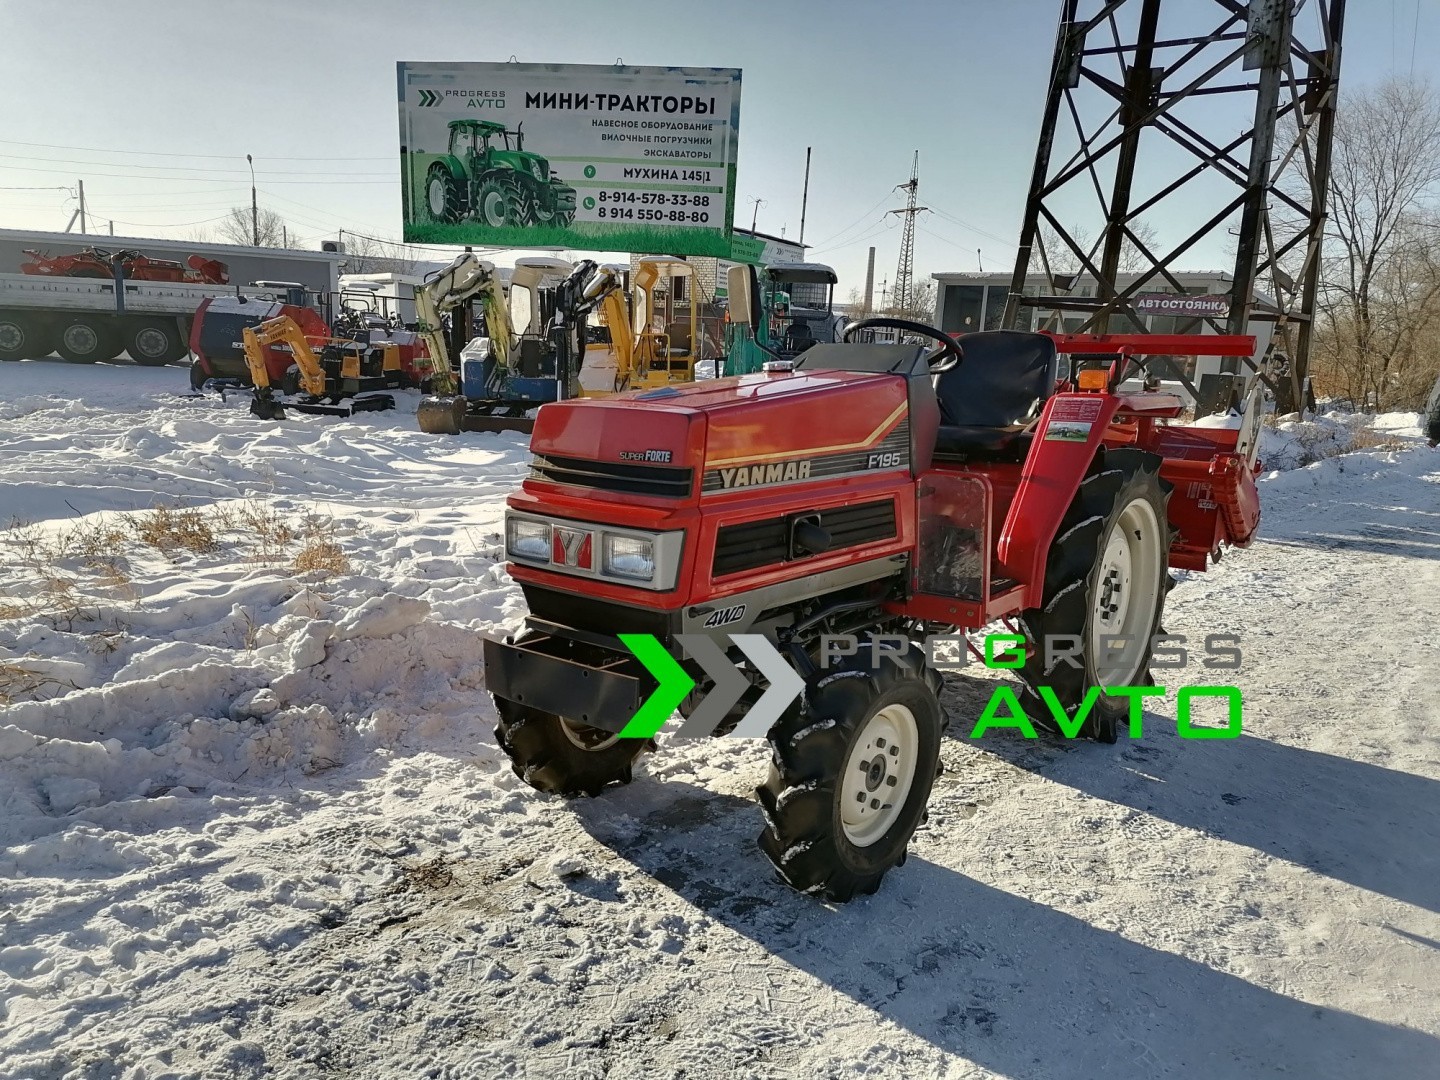 Купить трактор зим минитрактор в москве